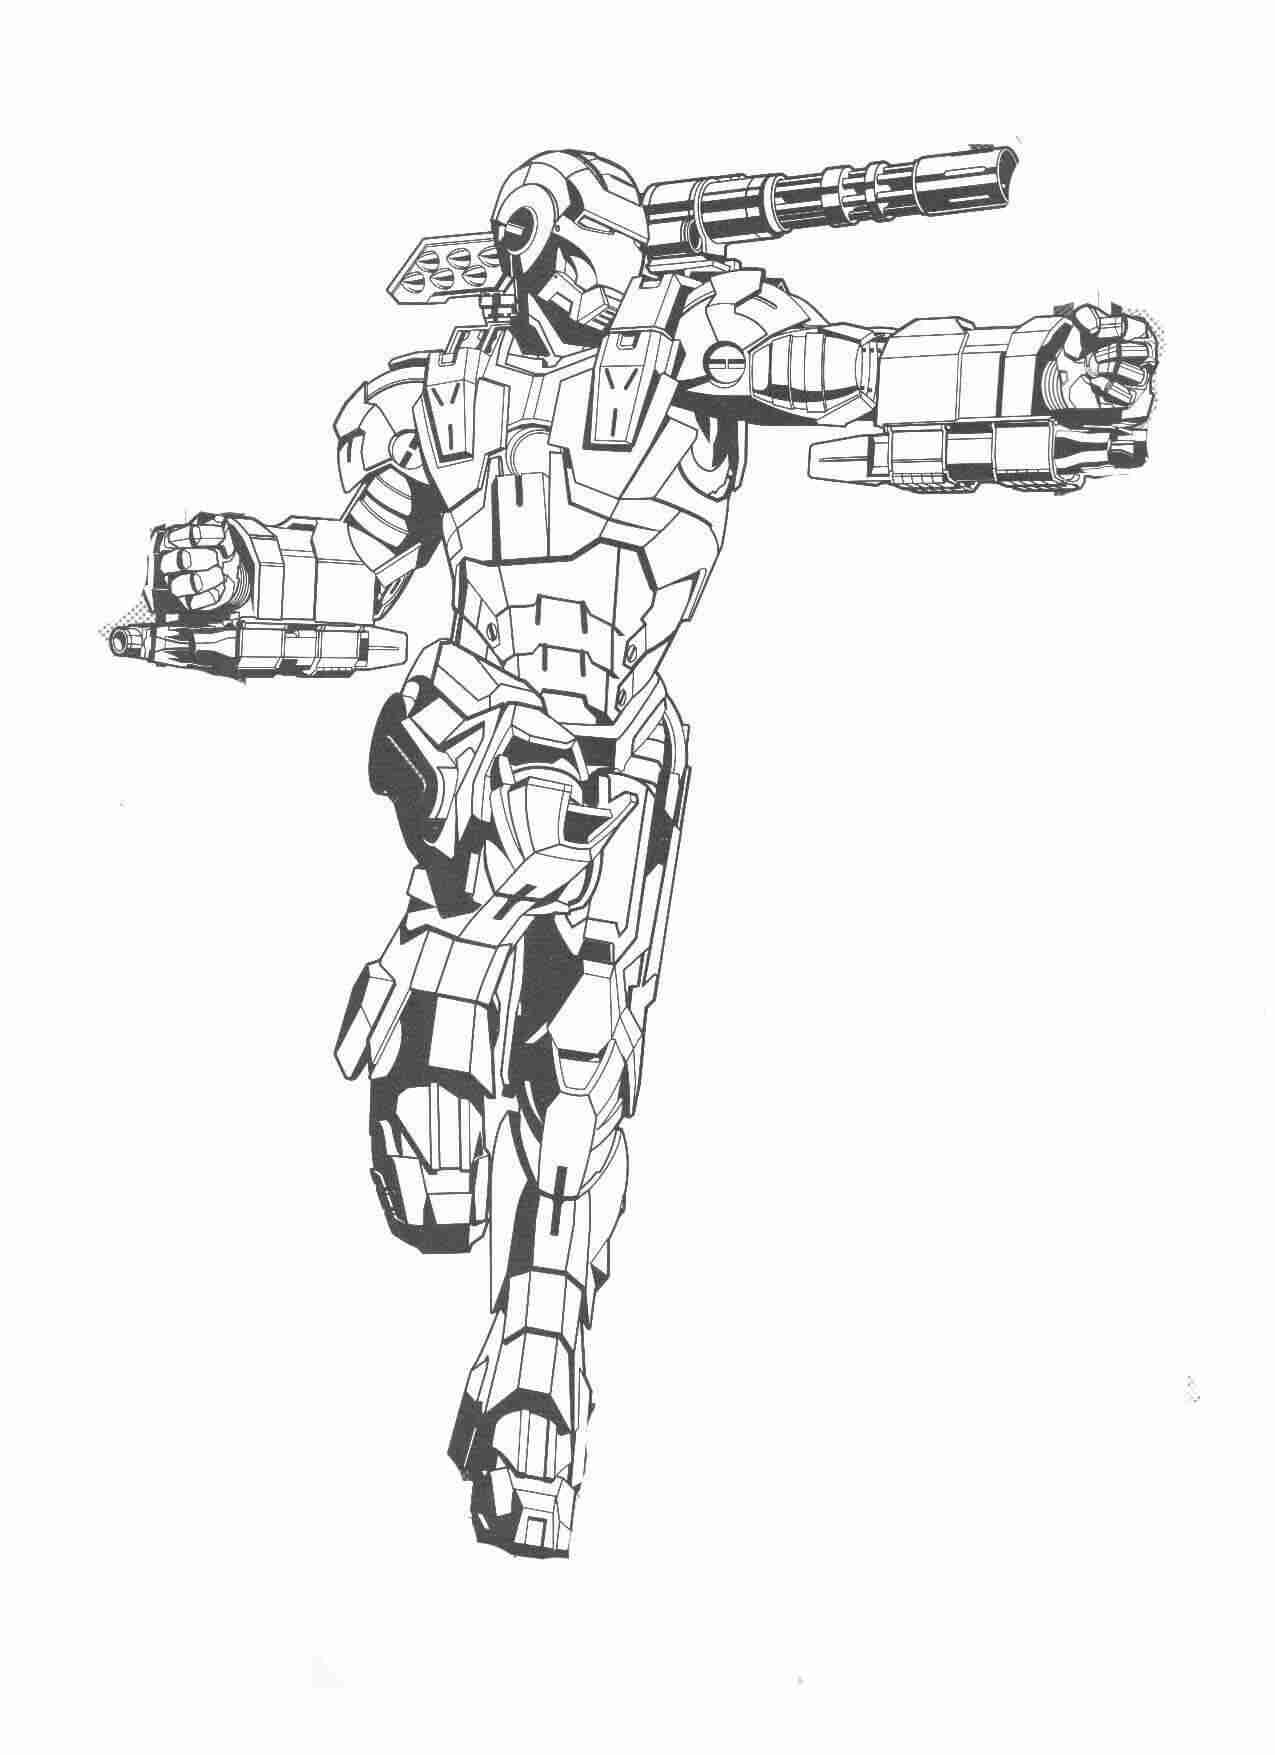 L'armatura di Iron Man ha una mitragliatrice da guerra sulla spalla e possiede due artigli di ferro in ciascuna mano